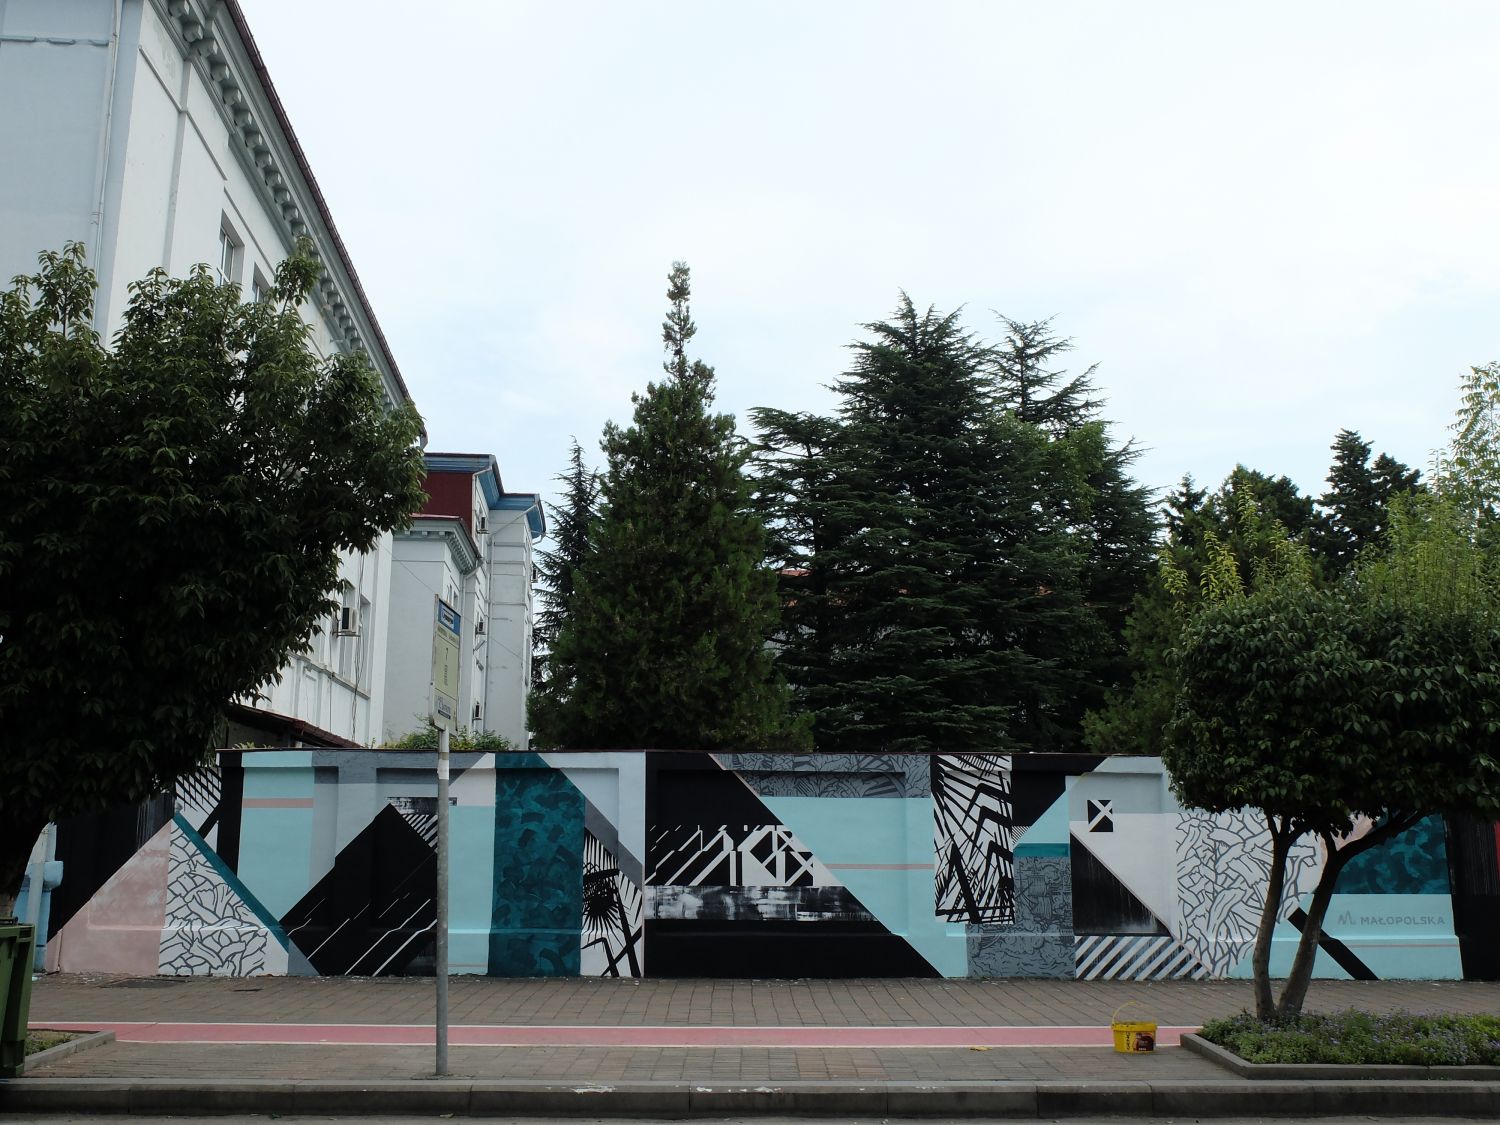 Na zdjęciu widać fragment ulicy w miejscowości Batumi (Gruzja). Wzdłuż ulicy znajduje się ok dwumetrowy mur, na którym znajduje się graffiti przedstawiające nieregularne figury geometryczne, paski, załamania.